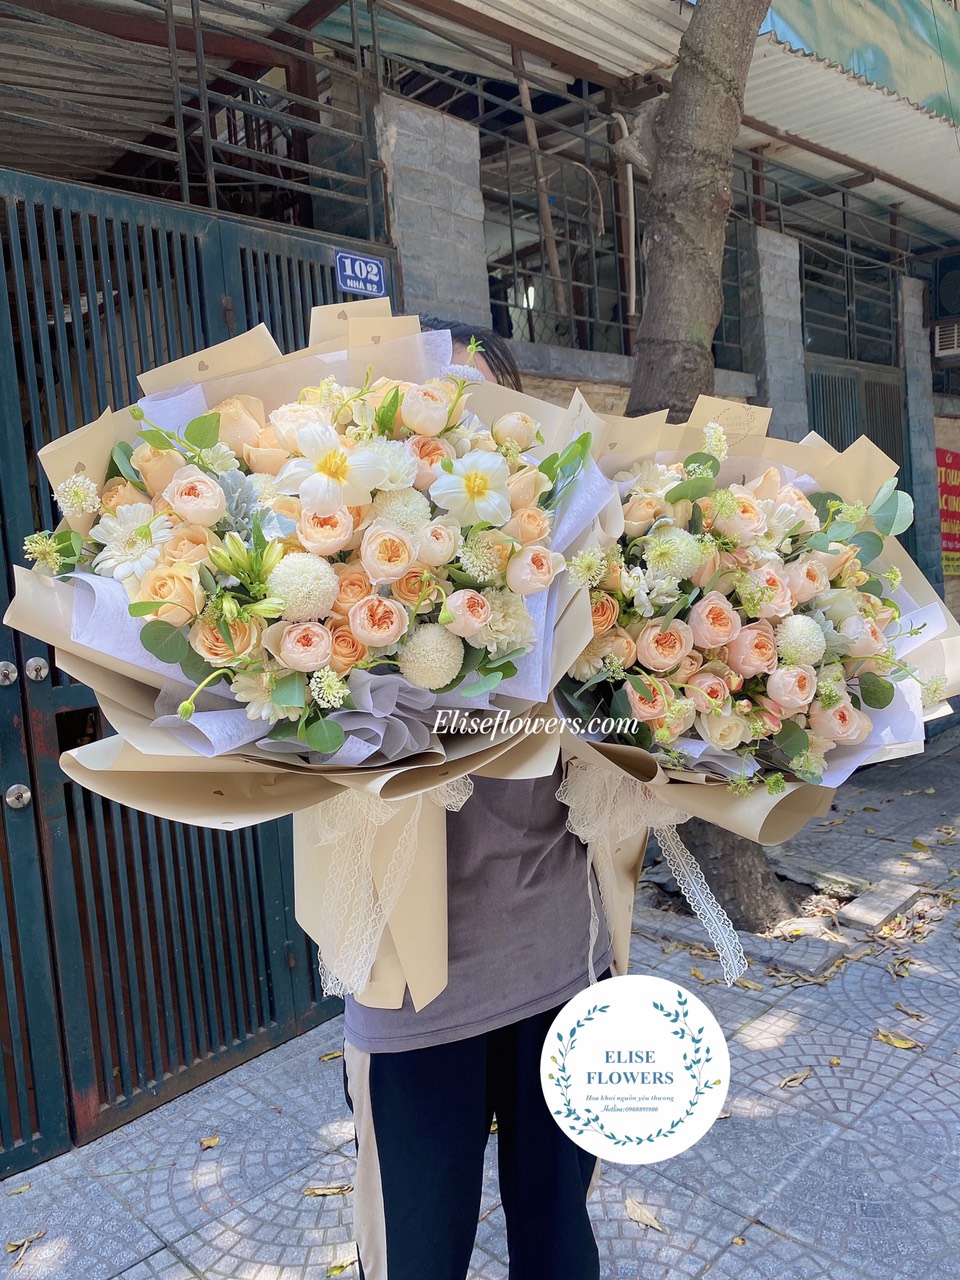 BÓ HOA HỒNG JULIET | Bó hoa hồng juliet đẹp mộng mơ | Bó hoa hồng ngoại Juliet đẹp thanh lịch | Eliseflowers - Bó hoa hồng ngoại Juliet đẹp ở Hà Nội